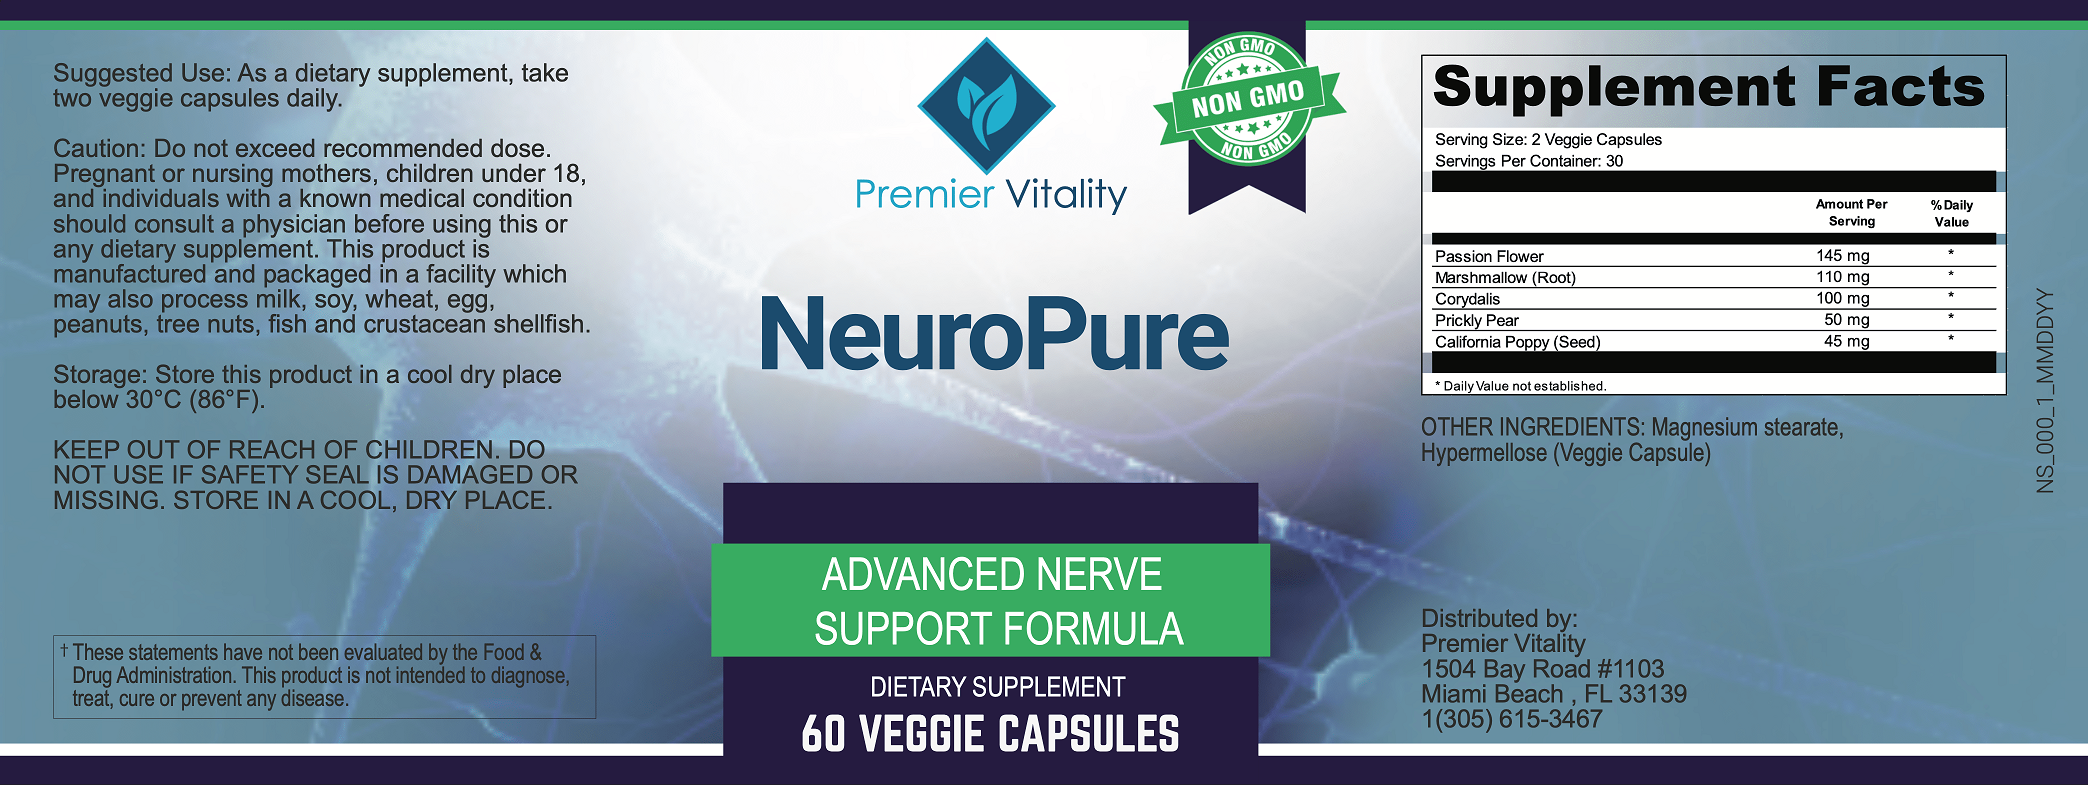 Premier Vitality NeuroPure 6 Ingredients.png